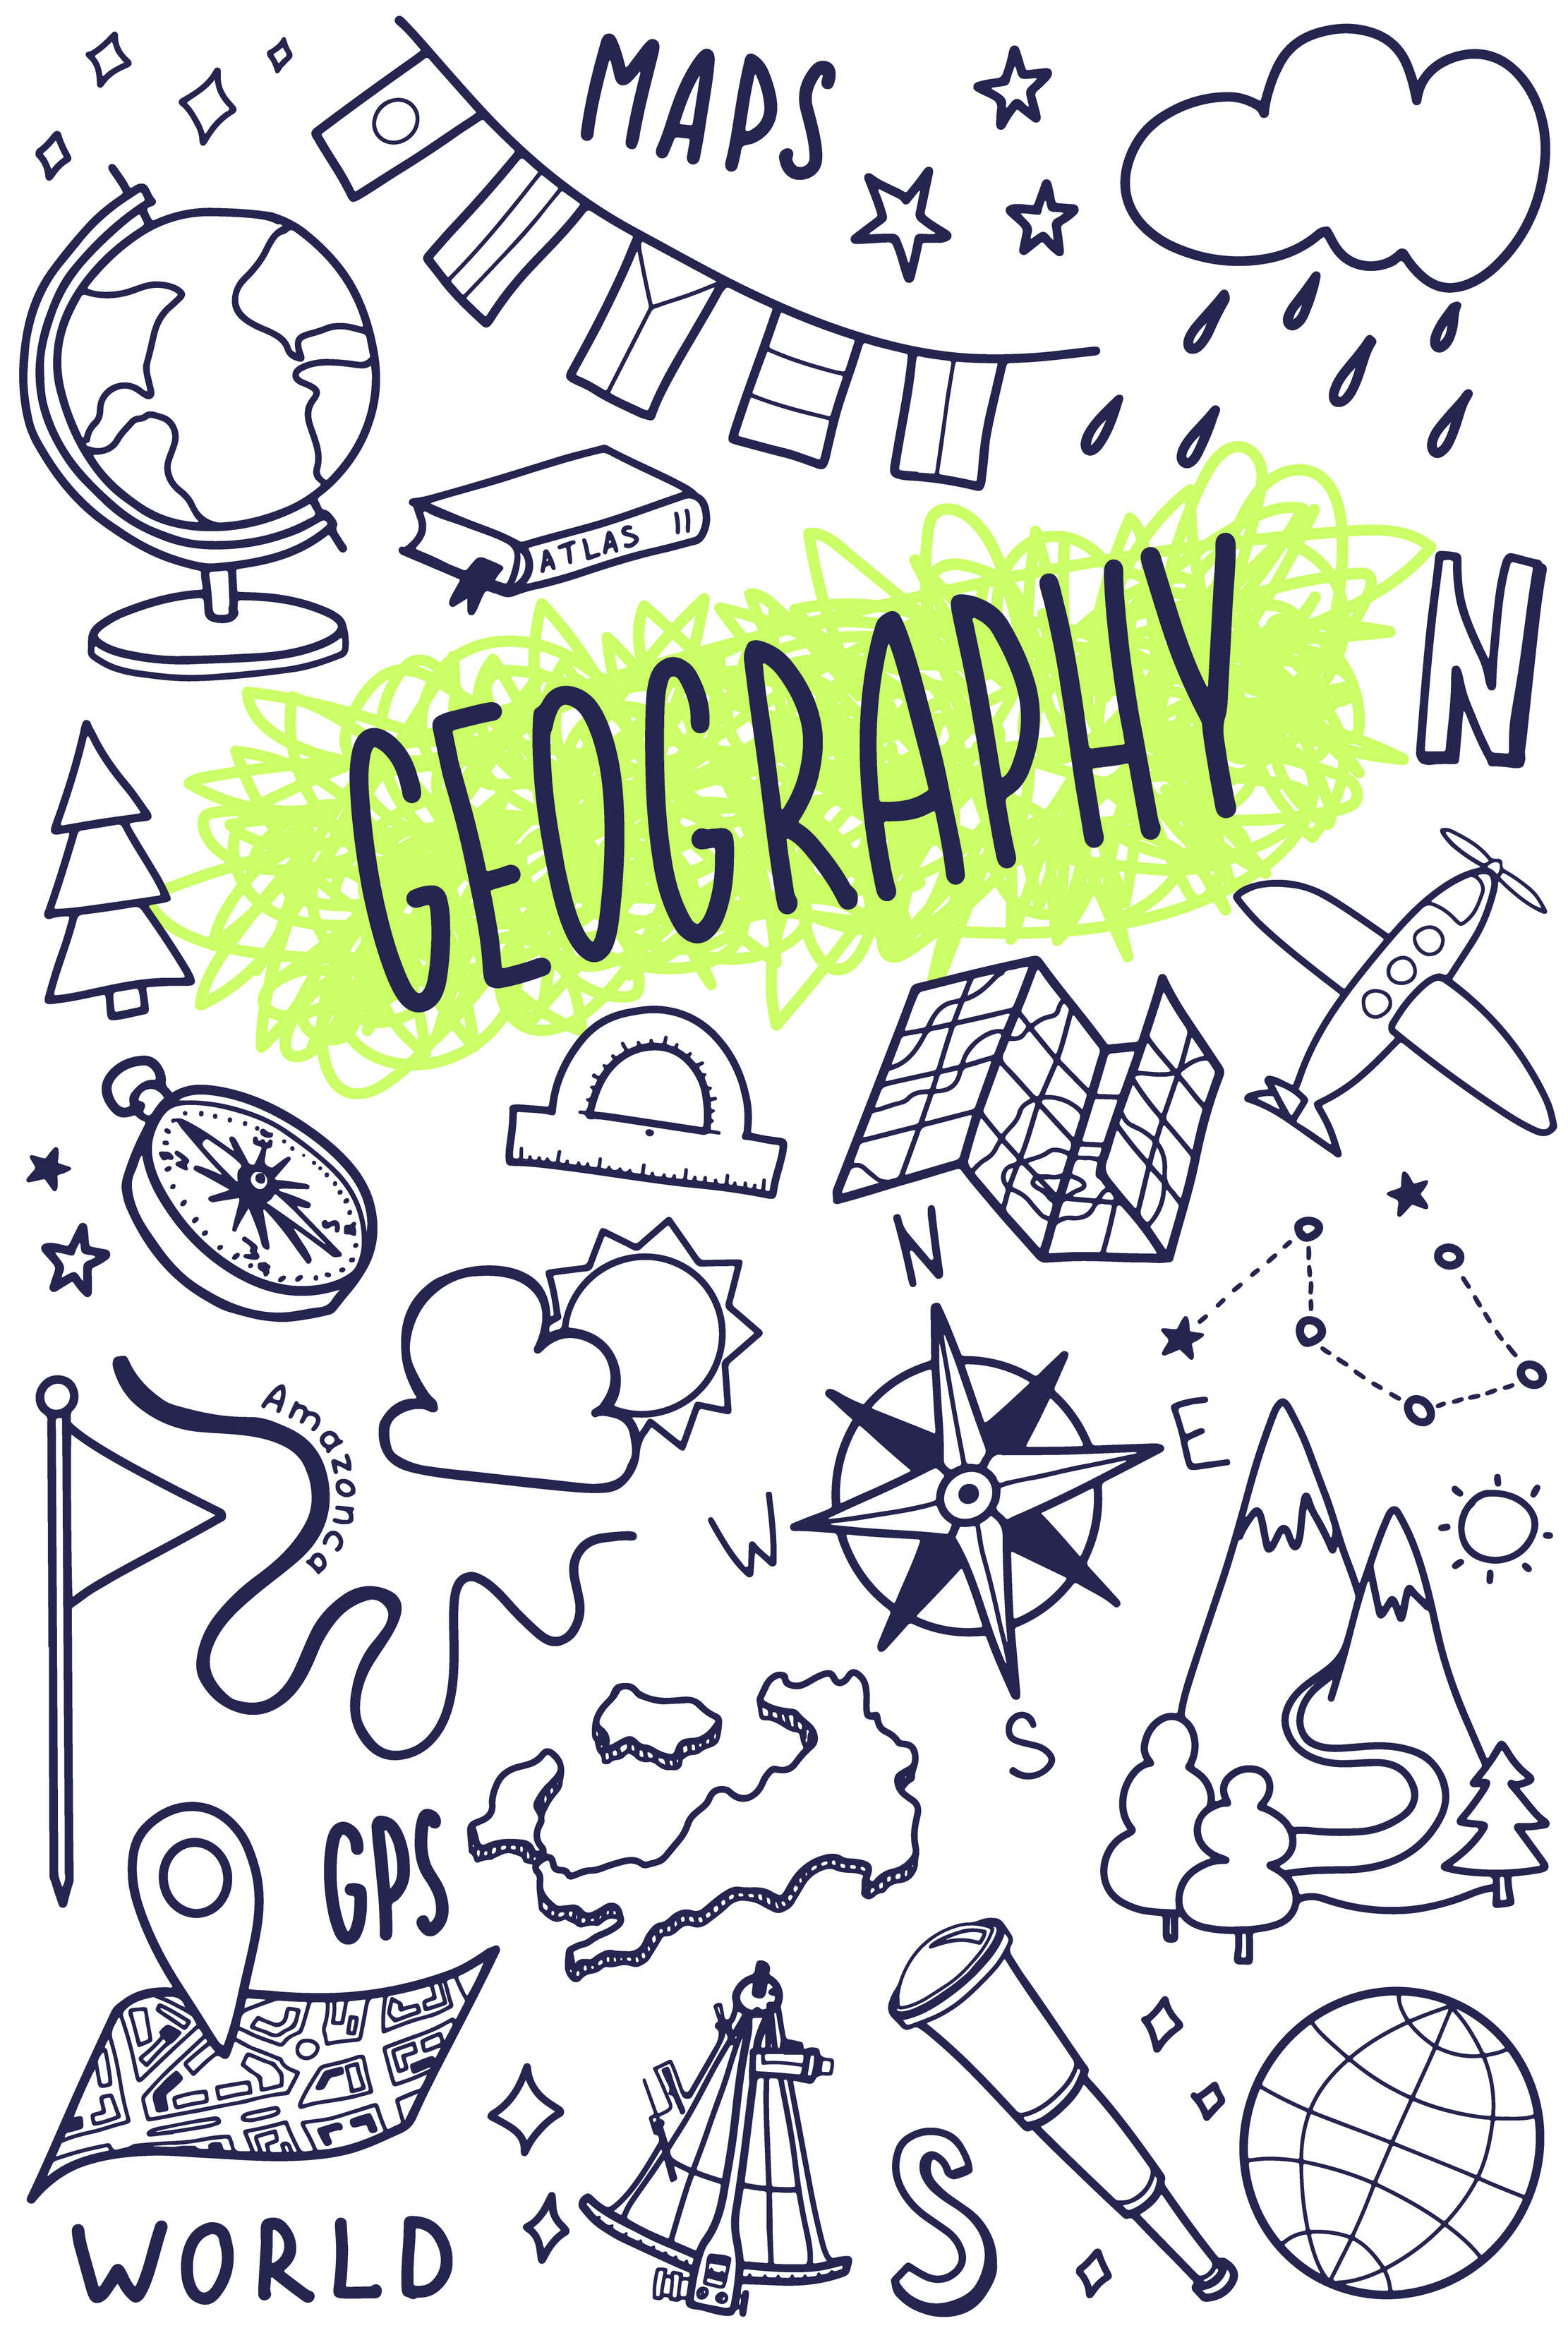 Biểu tượng địa lý: Tìm kiếm biểu tượng địa lý cho bản đồ của mình? Cùng xem những hình ảnh quen thuộc nhưng rất đặc biệt của các khu vực trên thế giới. Bạn sẽ thấy tình yêu của mình dành cho địa lý được thể hiện rõ ràng hơn bao giờ hết. 